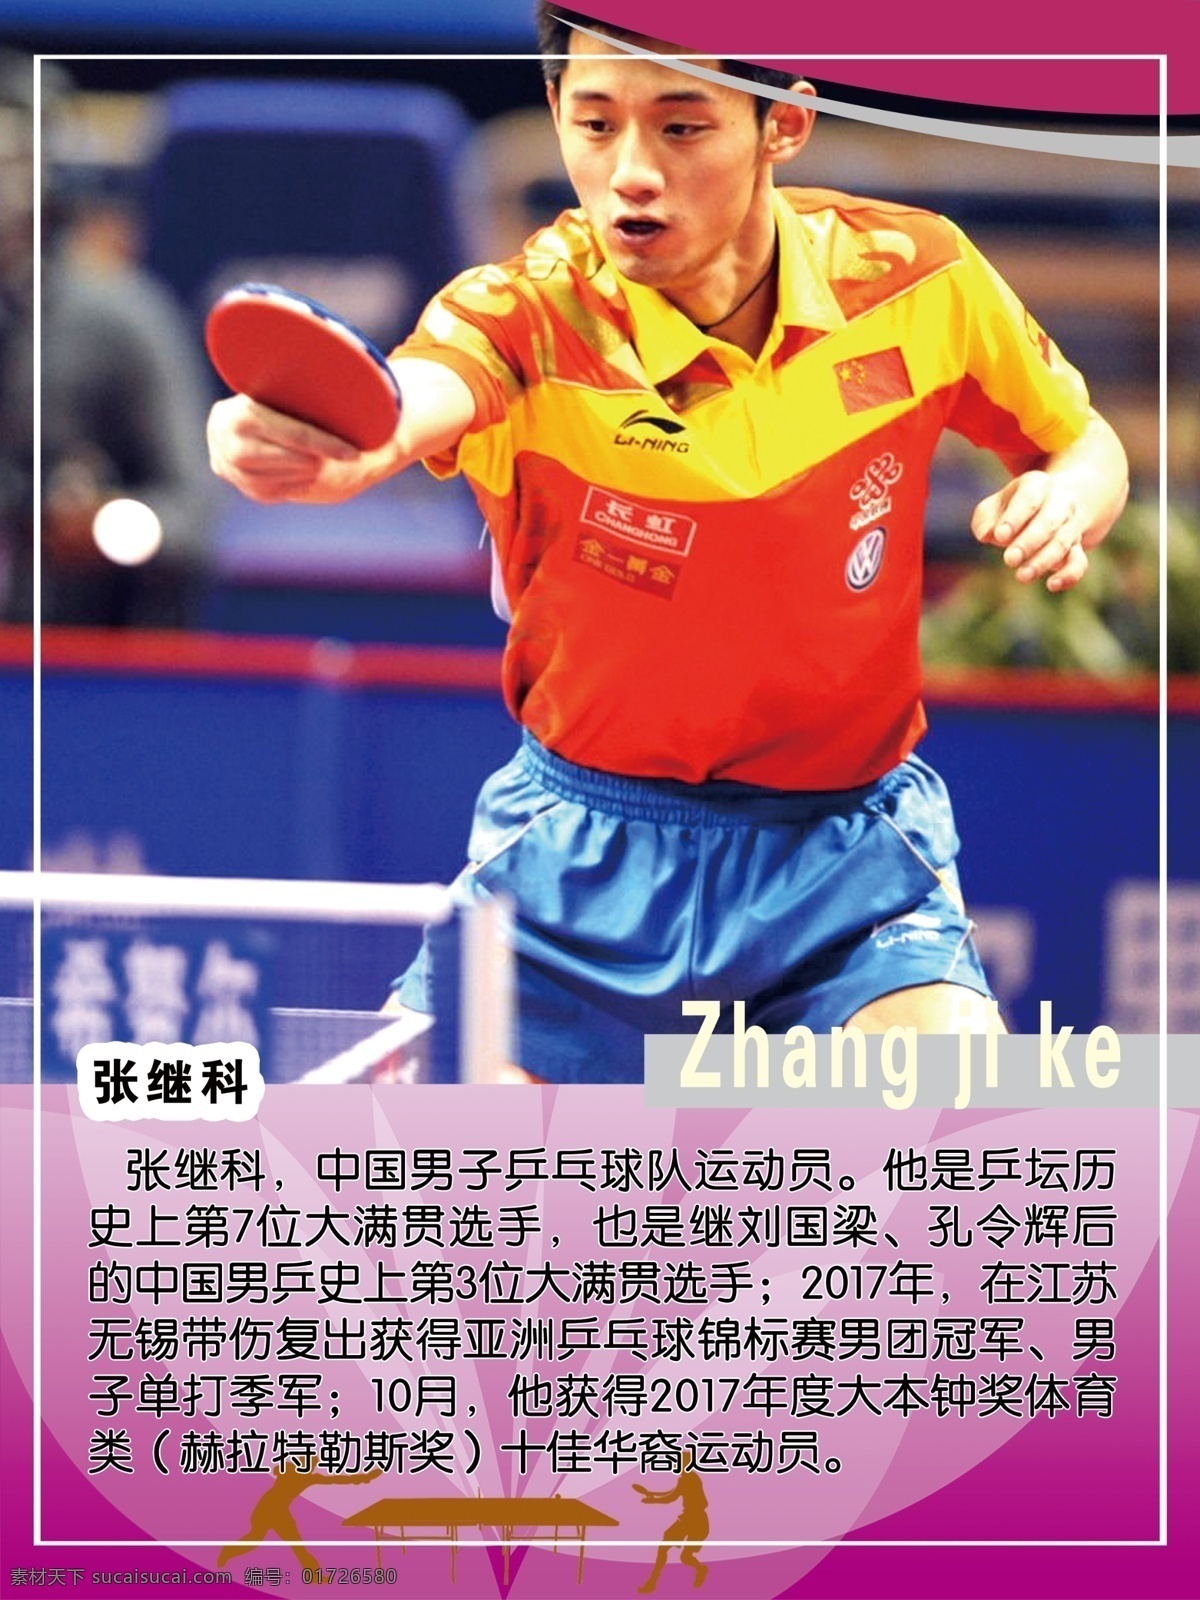 张继科 第七位 大满贯 男团冠军 单打季军 十佳华裔 乒乓球运动员 中国队 国手 分层